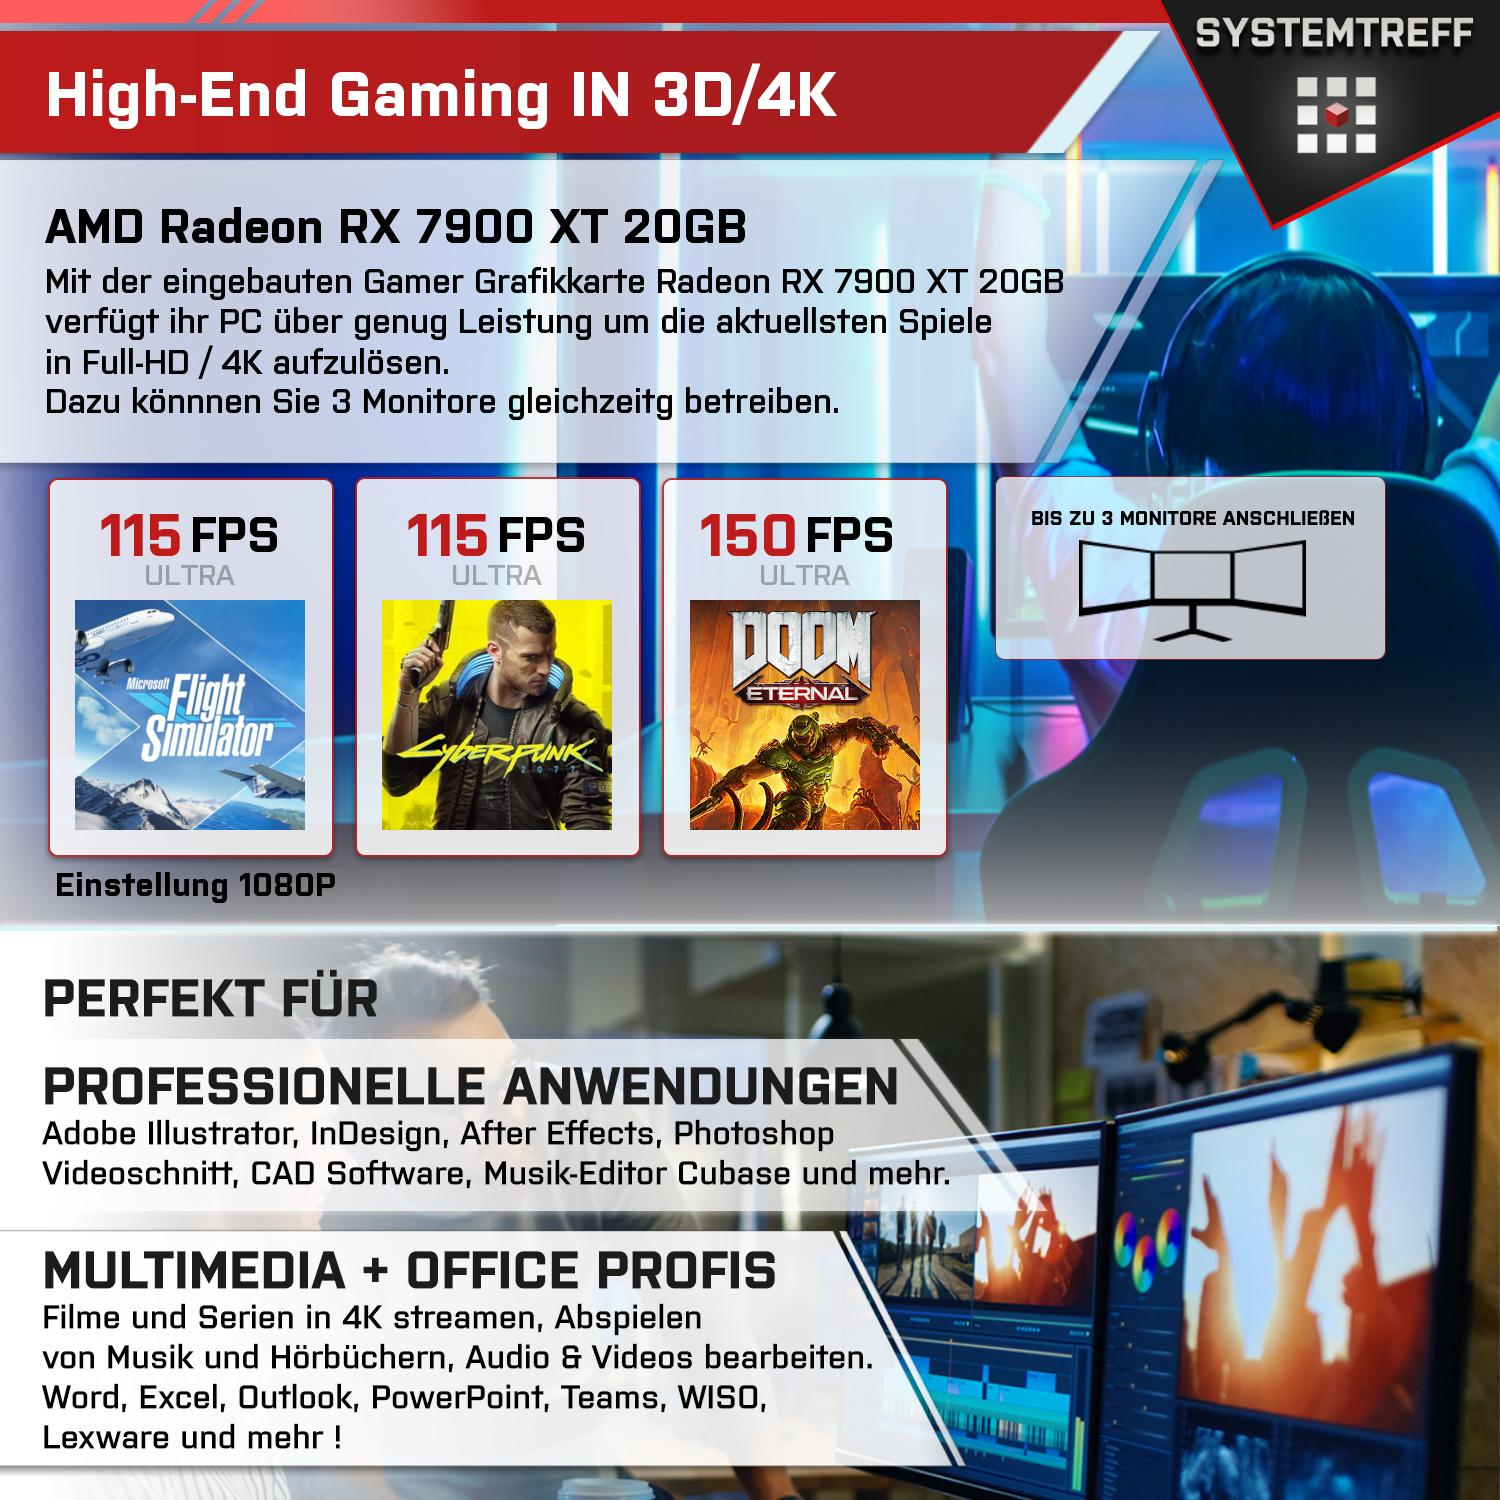 SYSTEMTREFF Gaming 7900 Komplett mit Ryzen GB GB GB PC 7900, 9 Radeon mSSD, Komplett RX GDDR6, 20 RAM, 1000 AMD XT AMD Prozessor, 7900 20GB 32